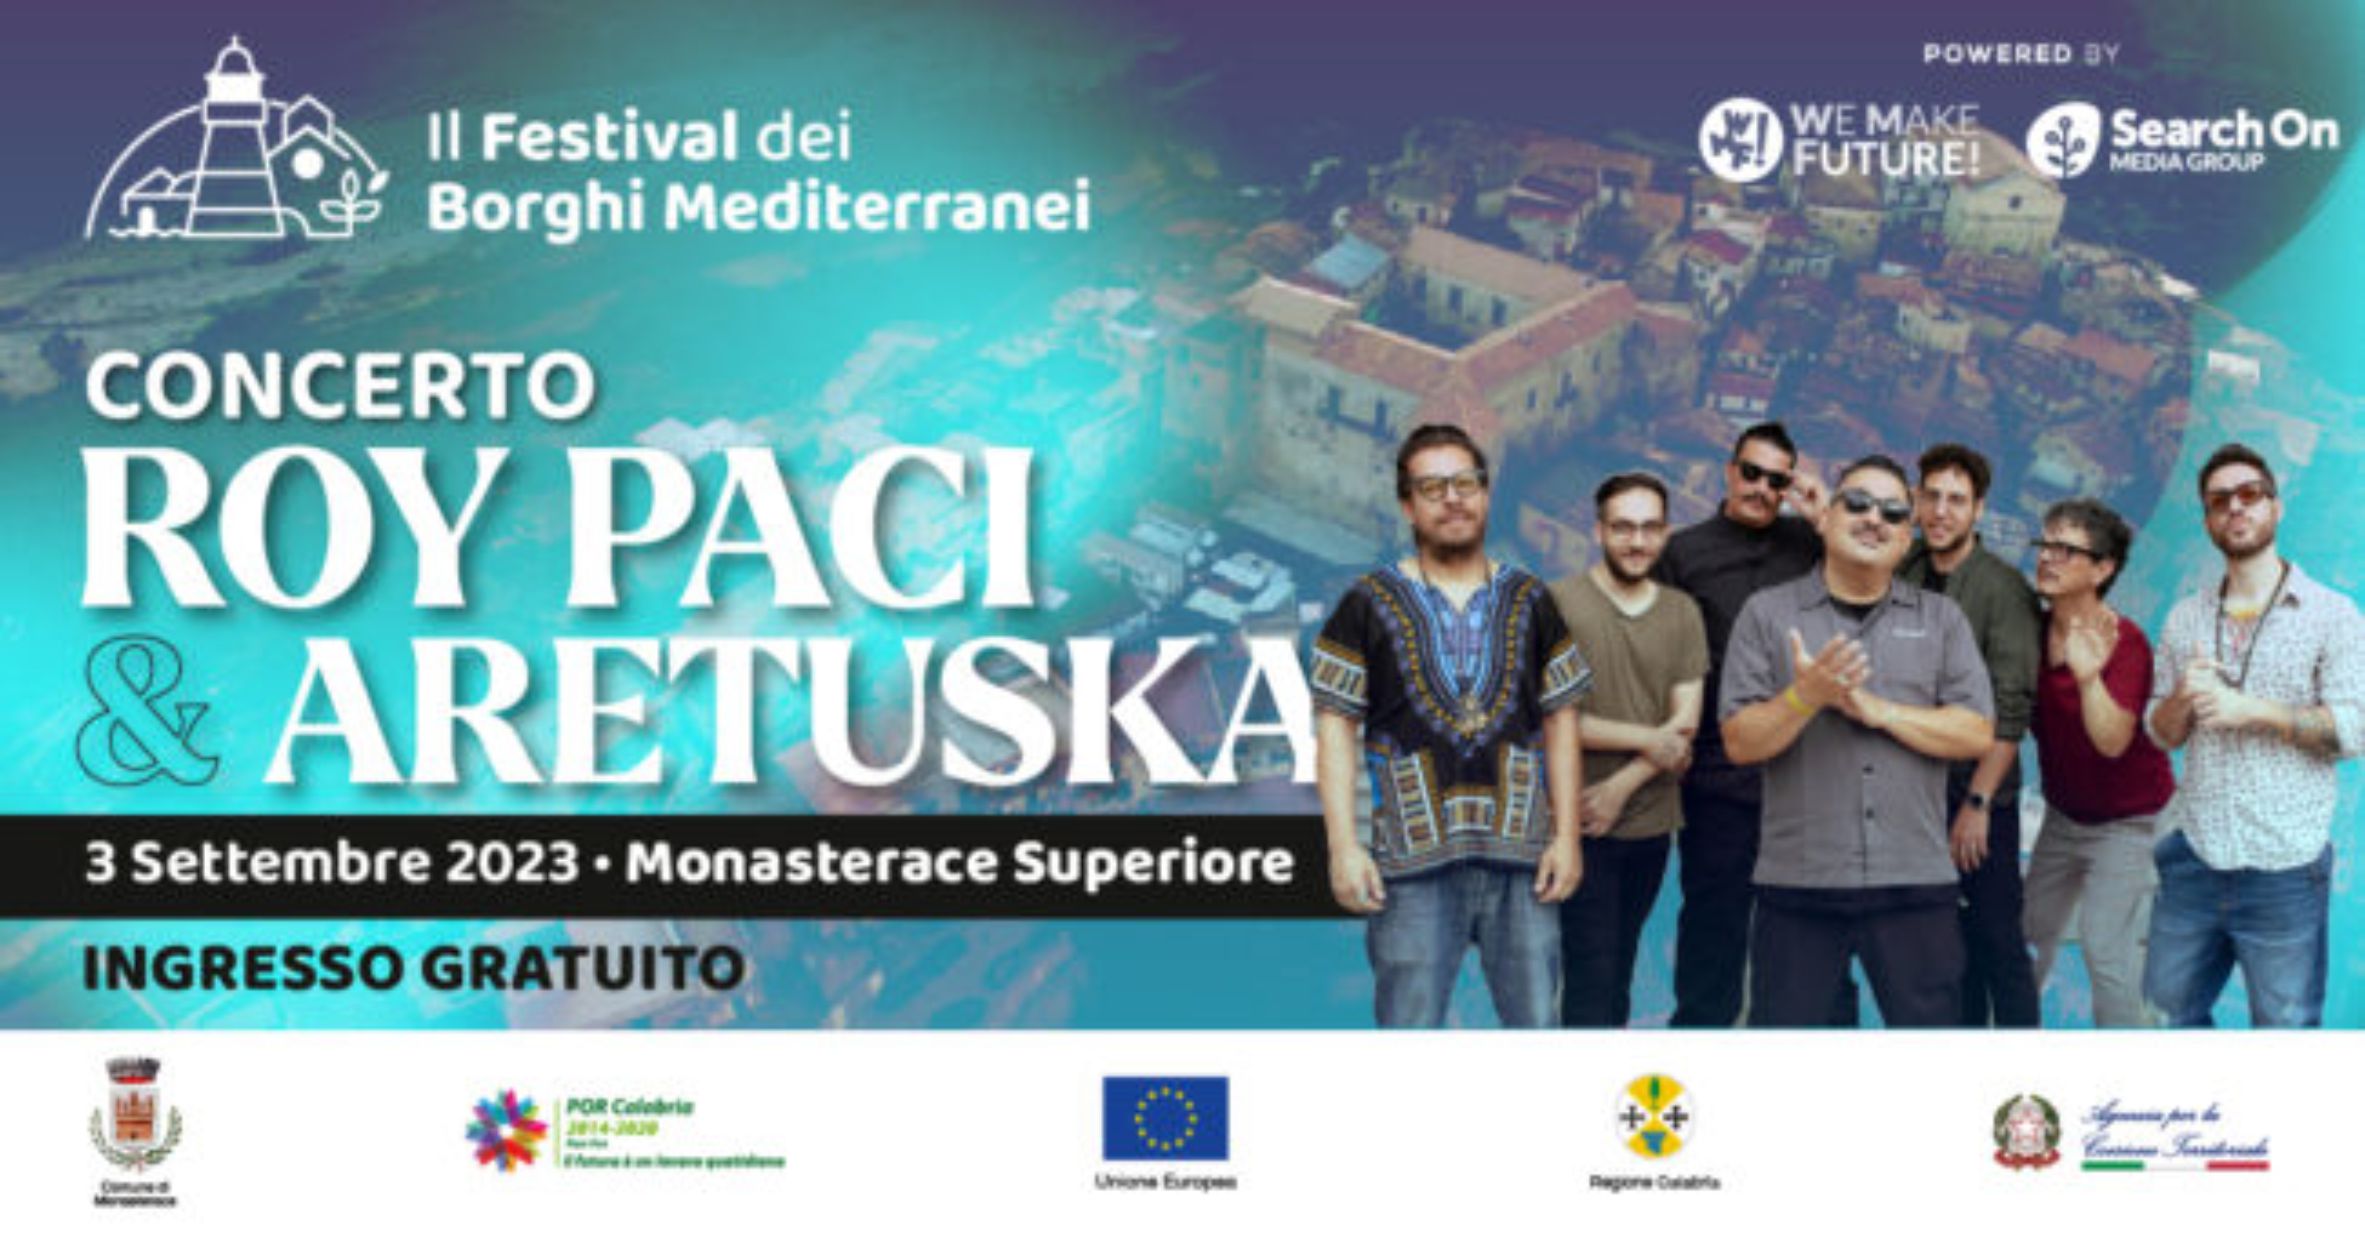 Il Festival del Borghi Mediterranei